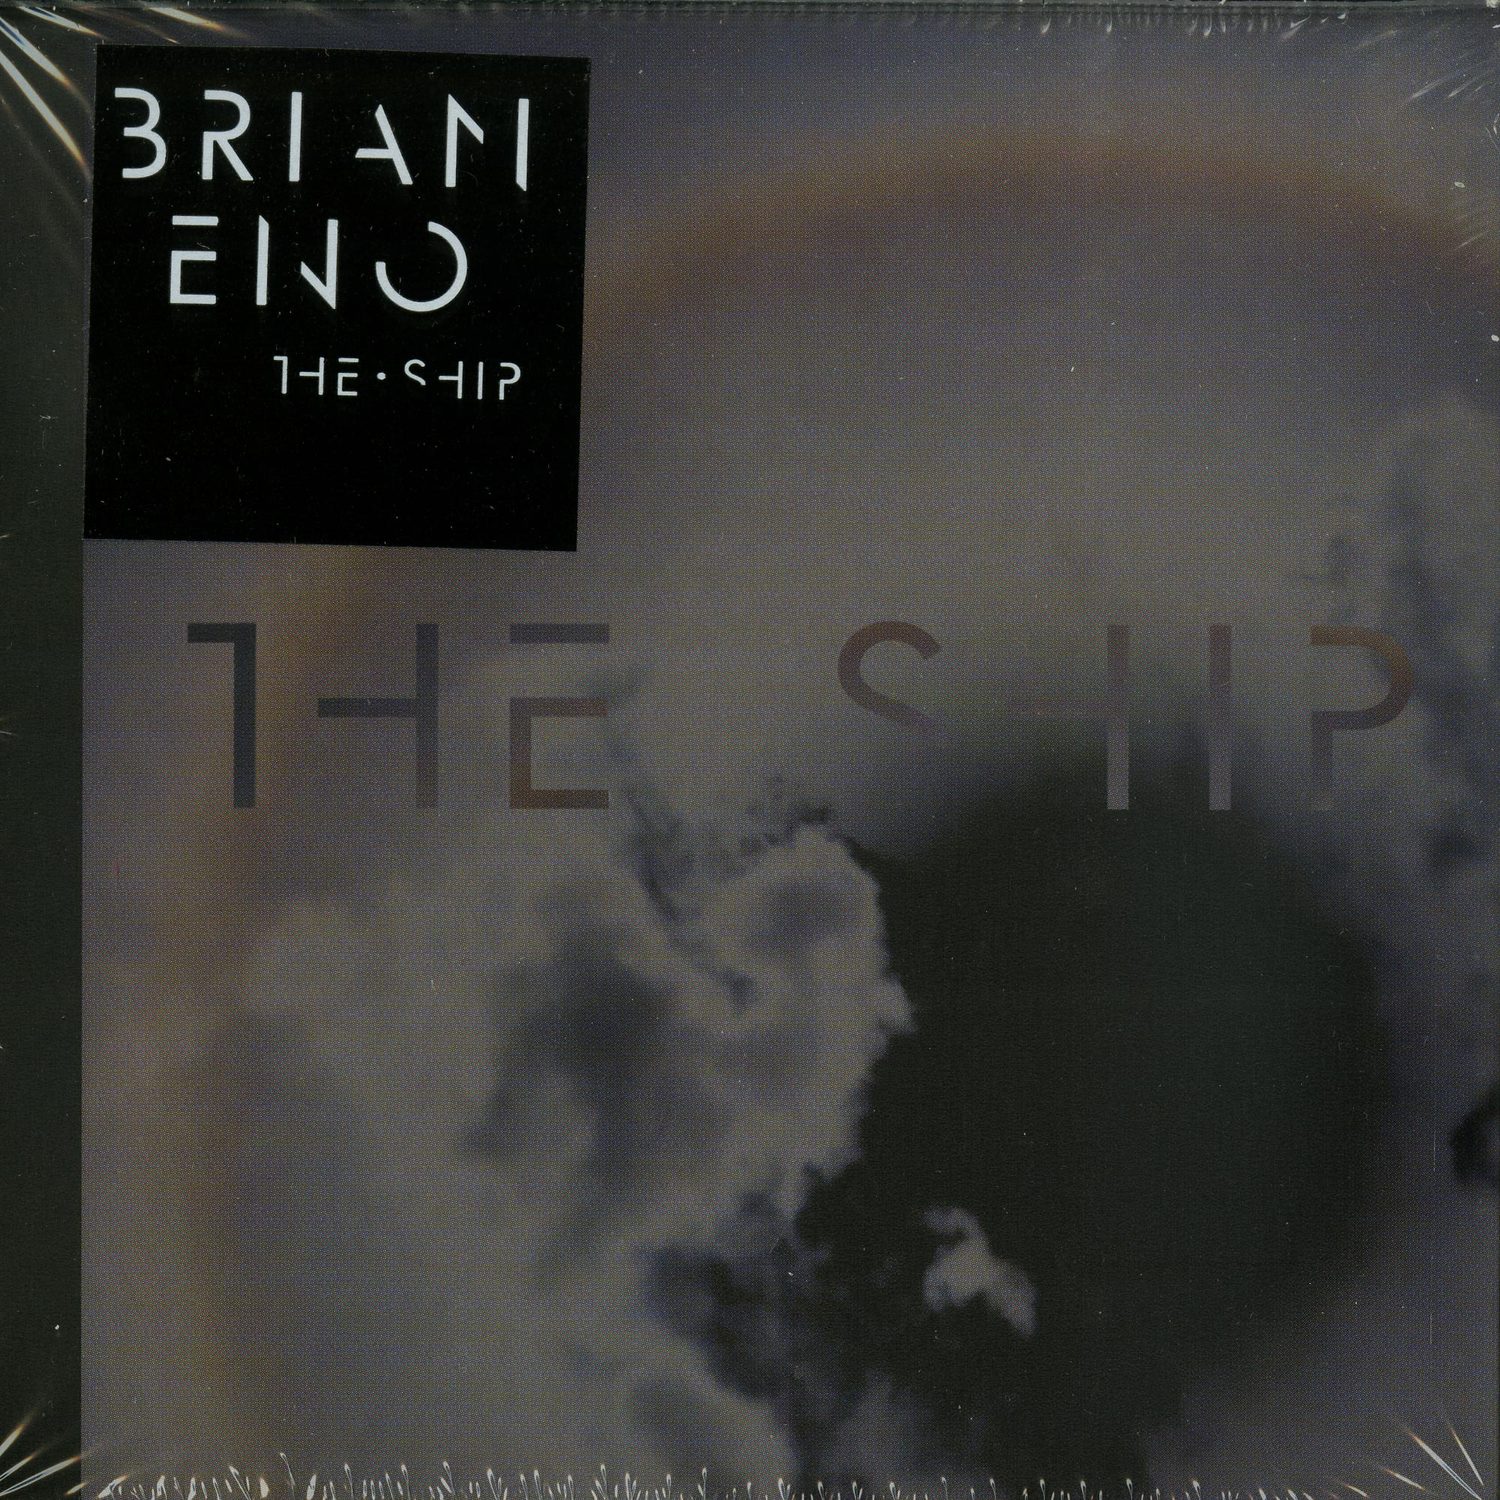 Brian Eno - THE SHIP 